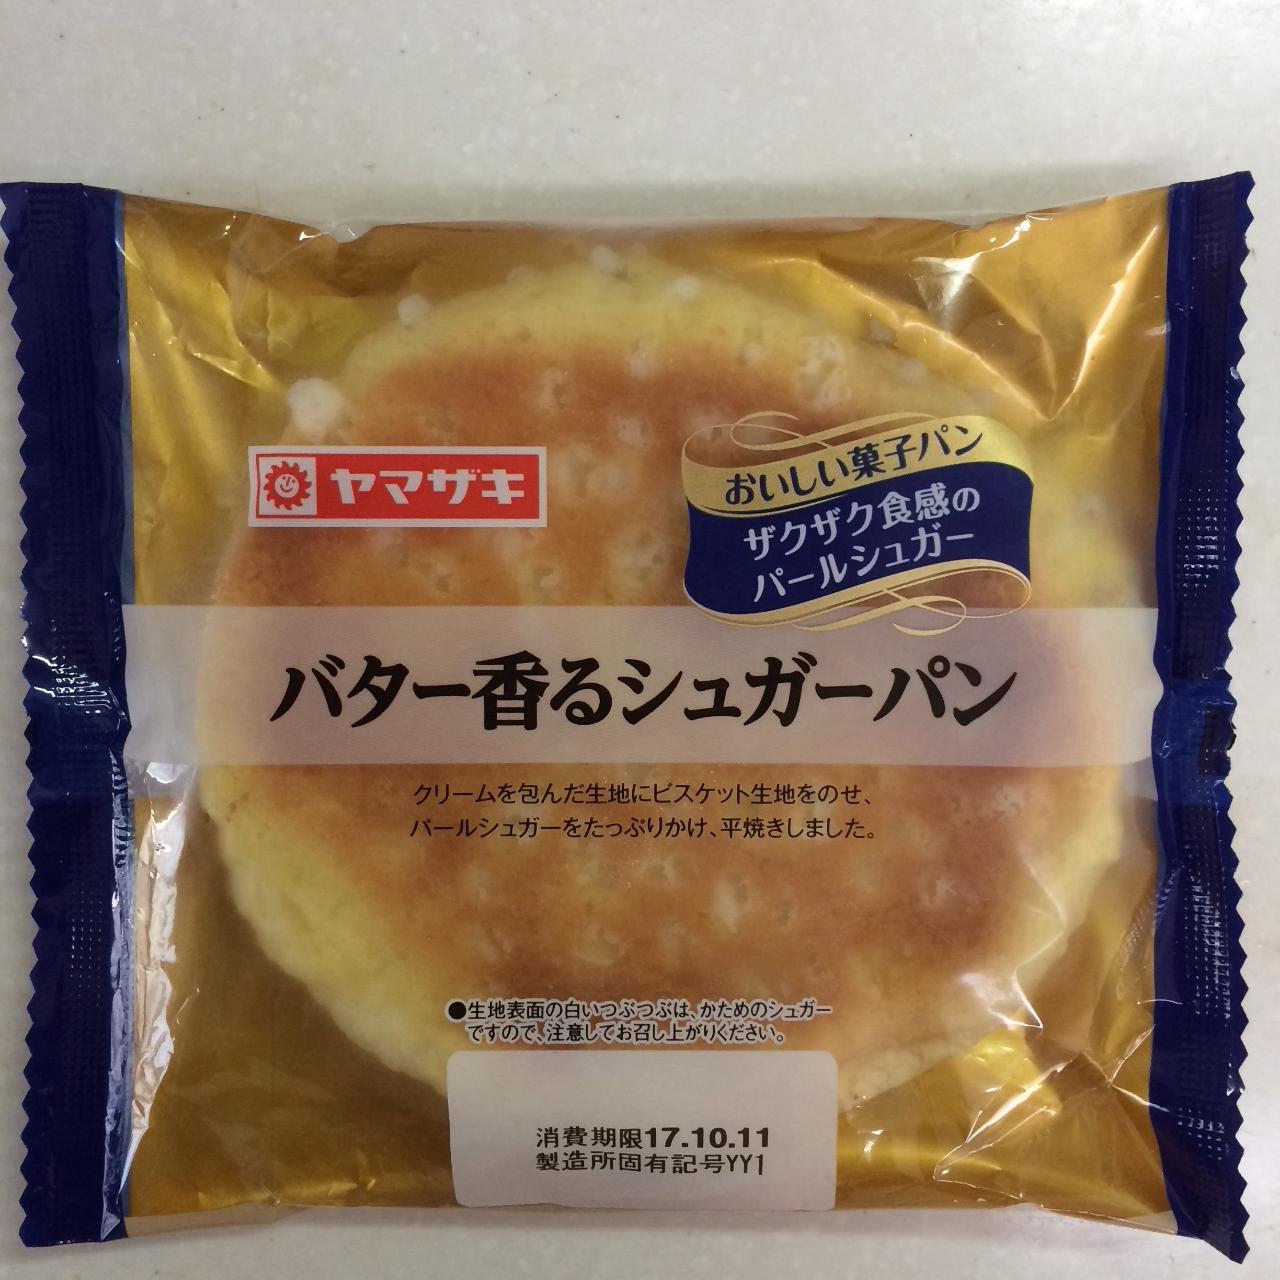 低評価 苦手 ヤマザキ おいしい菓子パン バター香るシュガーパン のクチコミ 評価 メロンパンナoさん もぐナビ